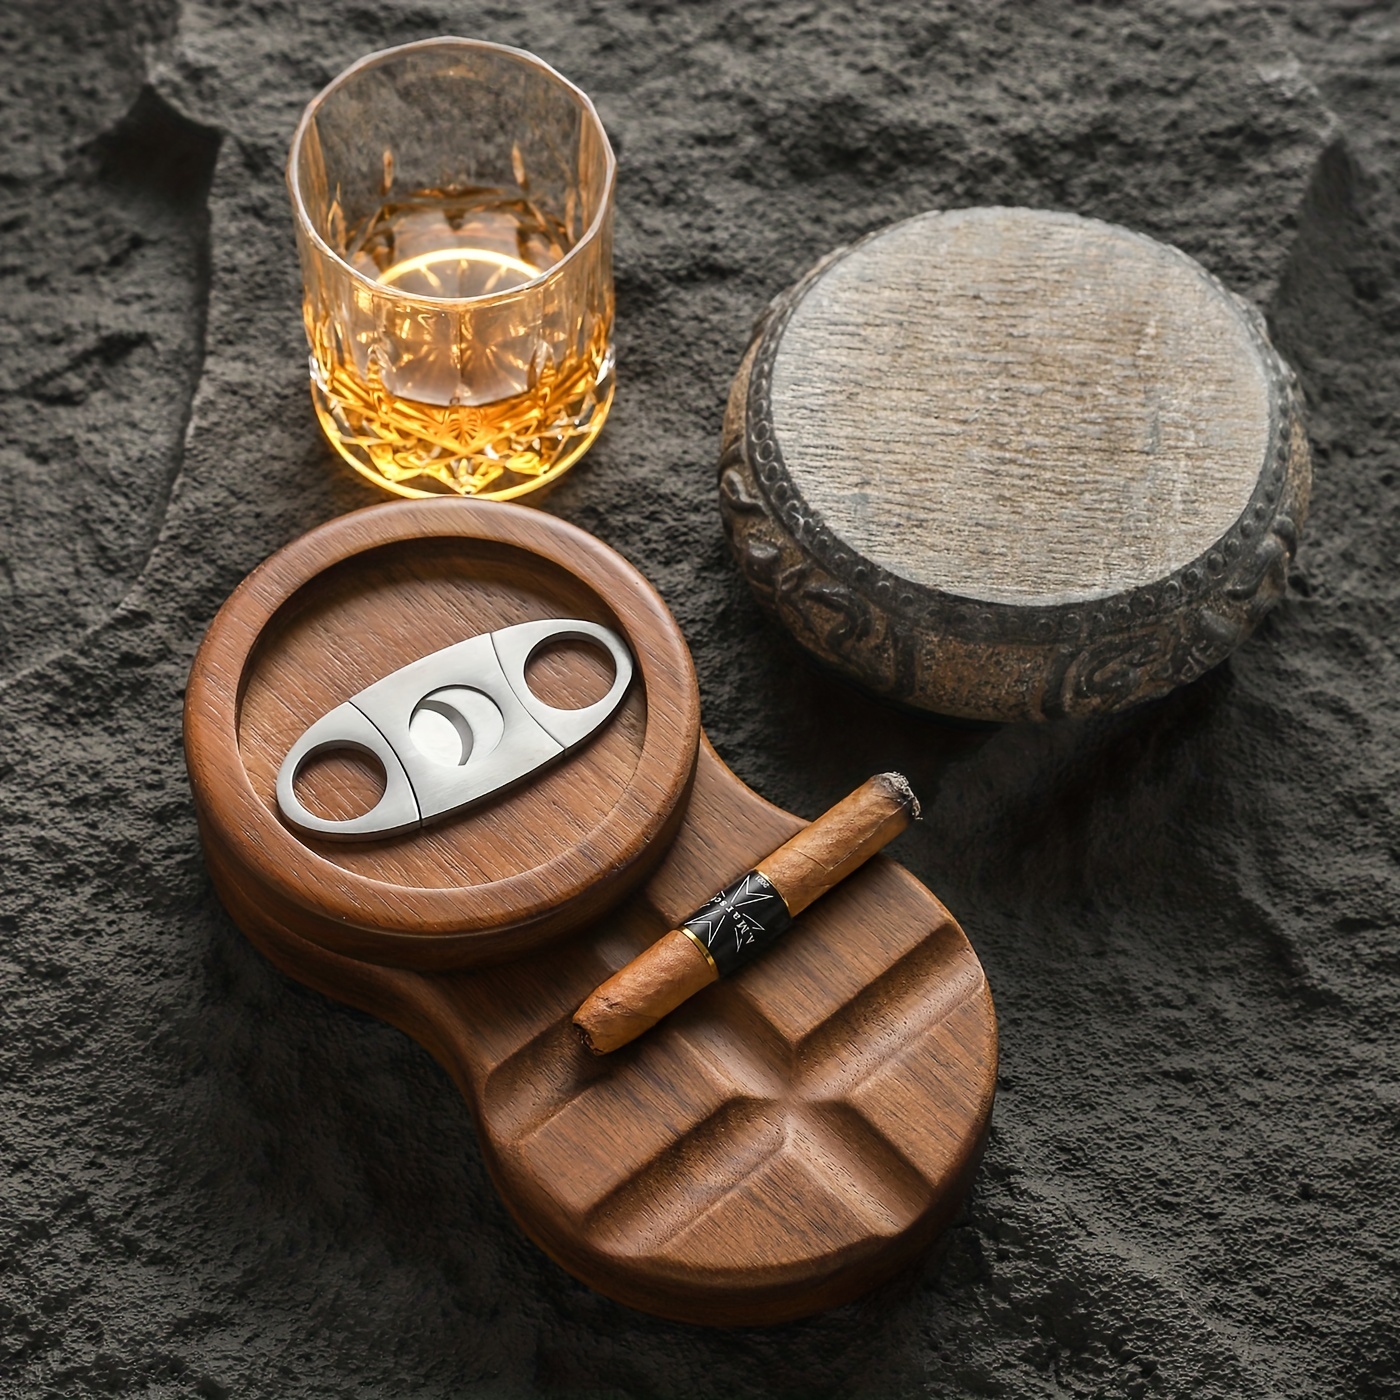 Cigar Ashtray Coaster Whiskey Glass Tray & Wooden Ash Tray with